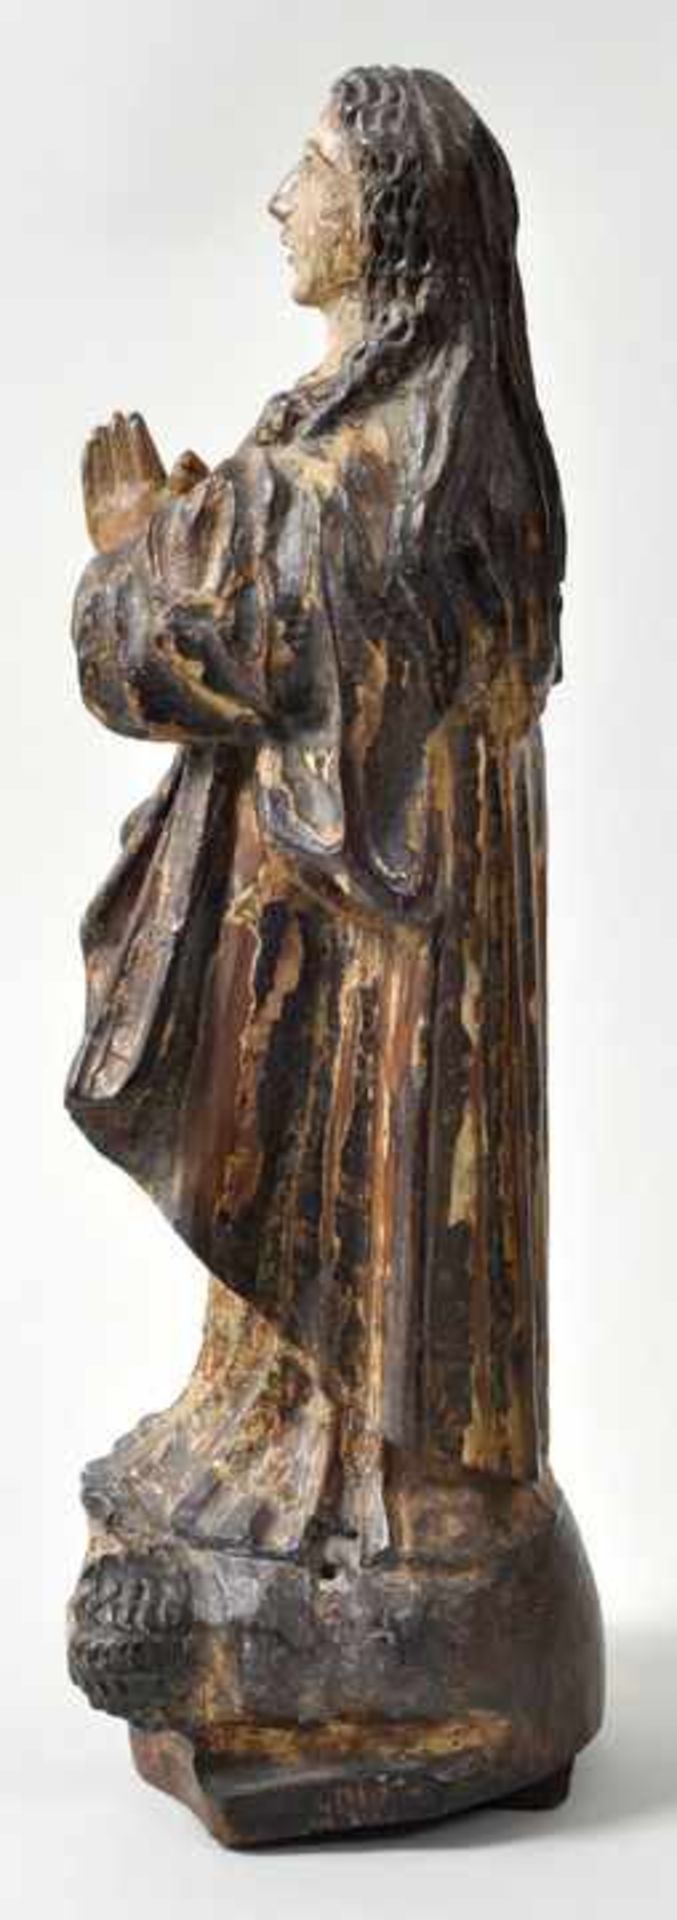 Maria Immaculata, Spanien, um 1700Wurzelholz, geschnitzt, Farbfassung. In streng aufgefasster, - Bild 2 aus 3